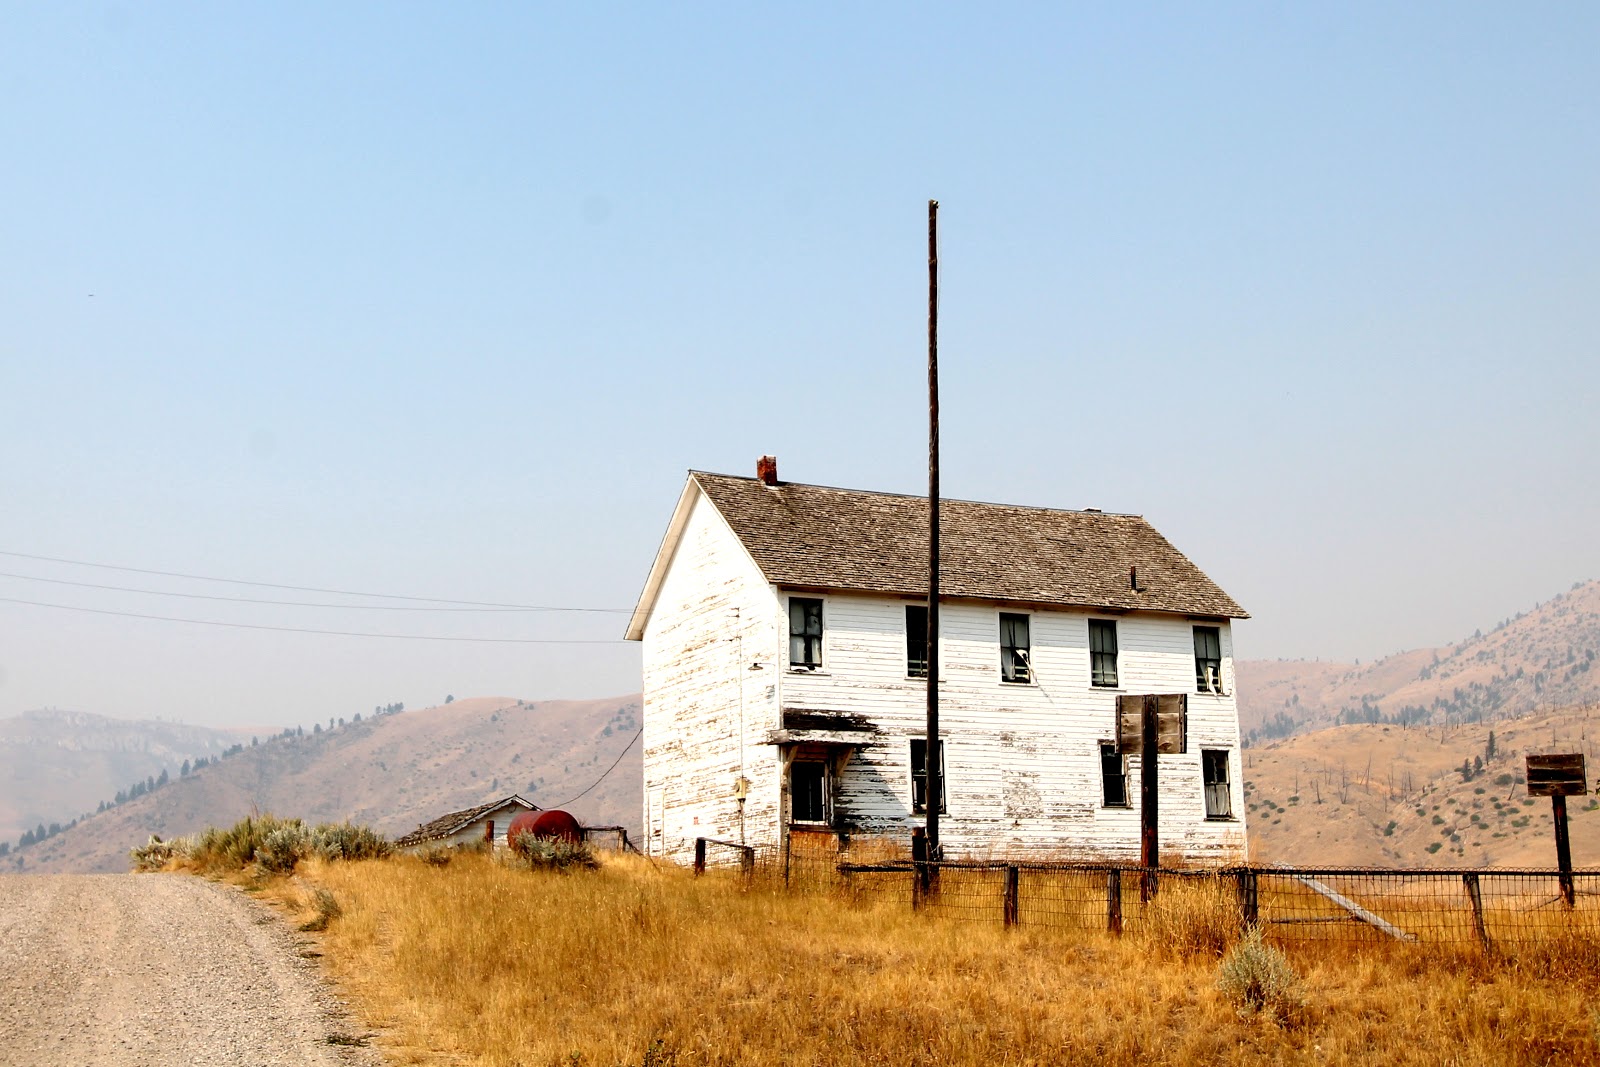 mitcheci photos: Montana Abandoned Towns: Maudlow